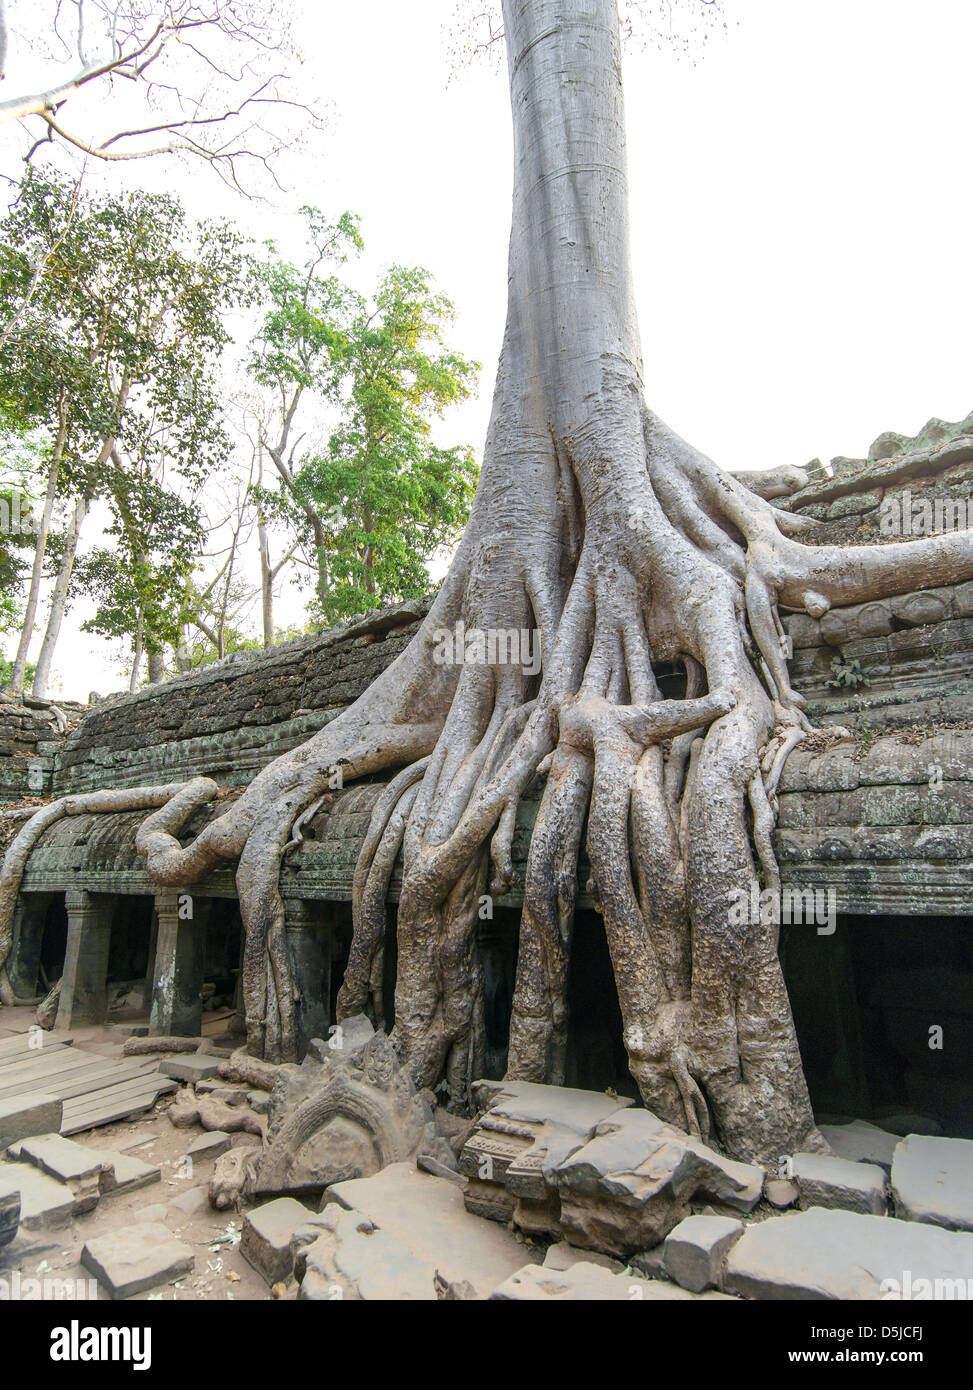 Les racines des arbres couvrant un bâtiment ruines. Ta Prohm. Parc archéologique d'angkor.Siem Reap. Cambodge Banque D'Images